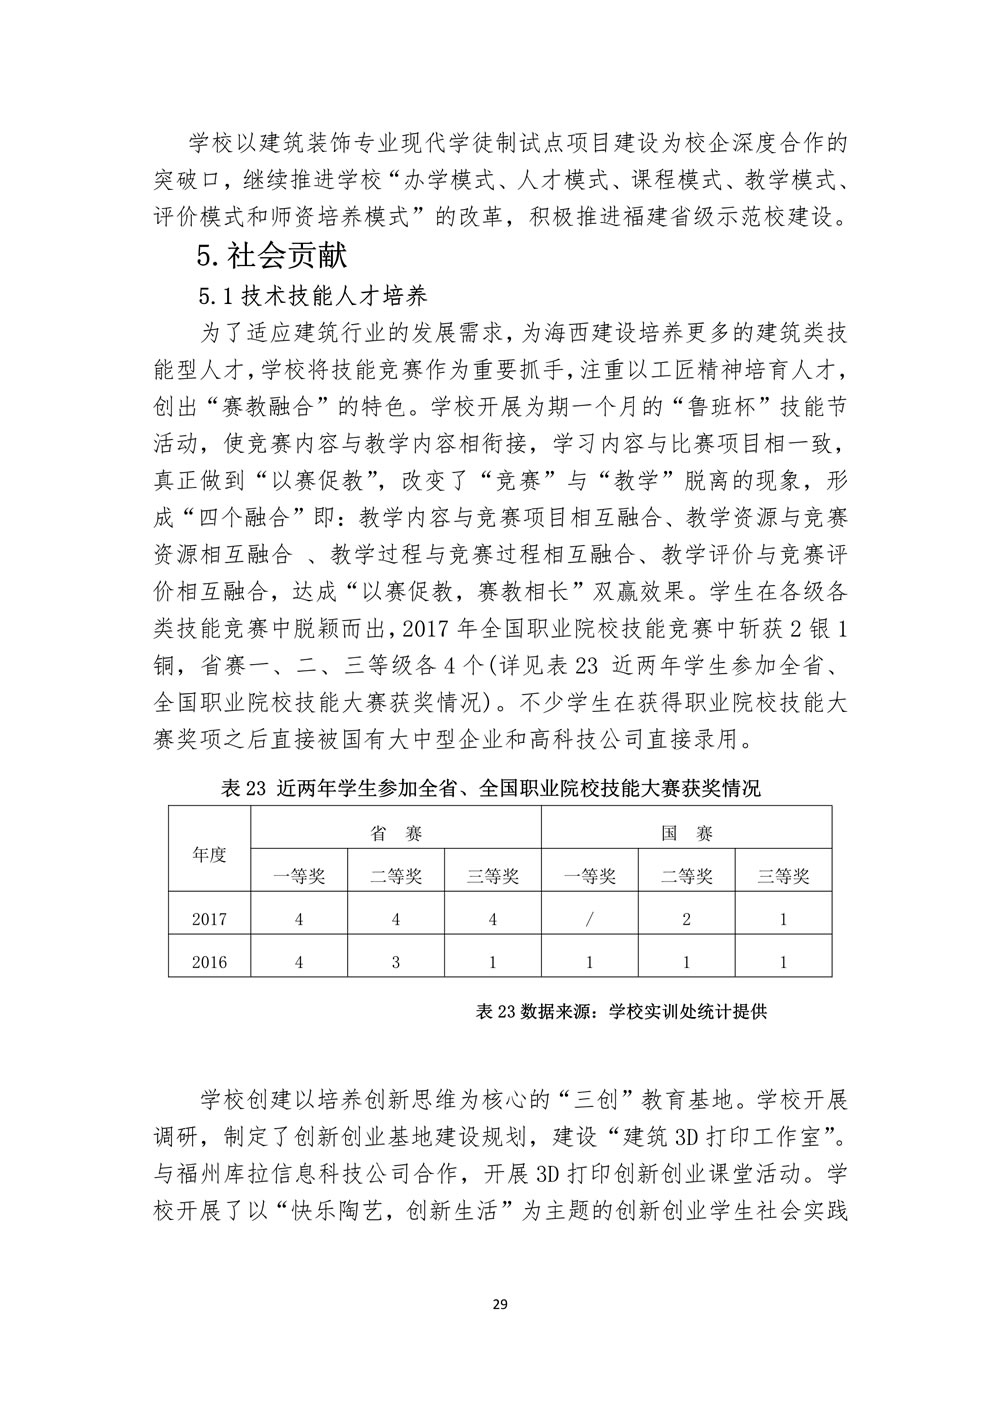 111110293871_0福建省福州建筑工程职业中专学校教育质量报告(2017年_31